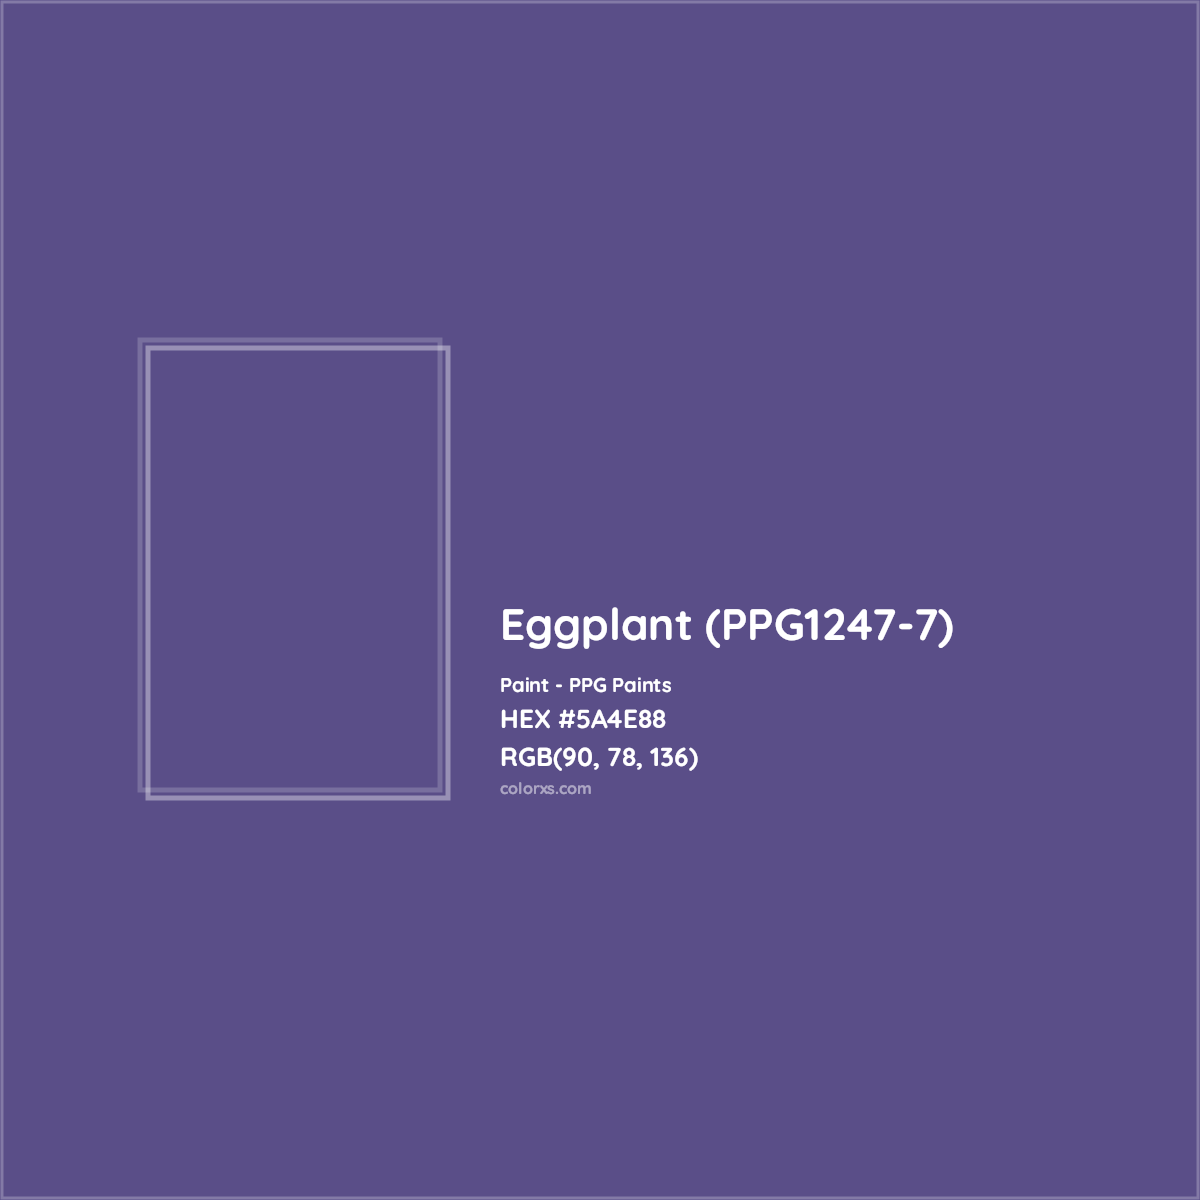 HEX #5A4E88 Eggplant (PPG1247-7) Paint PPG Paints - Color Code